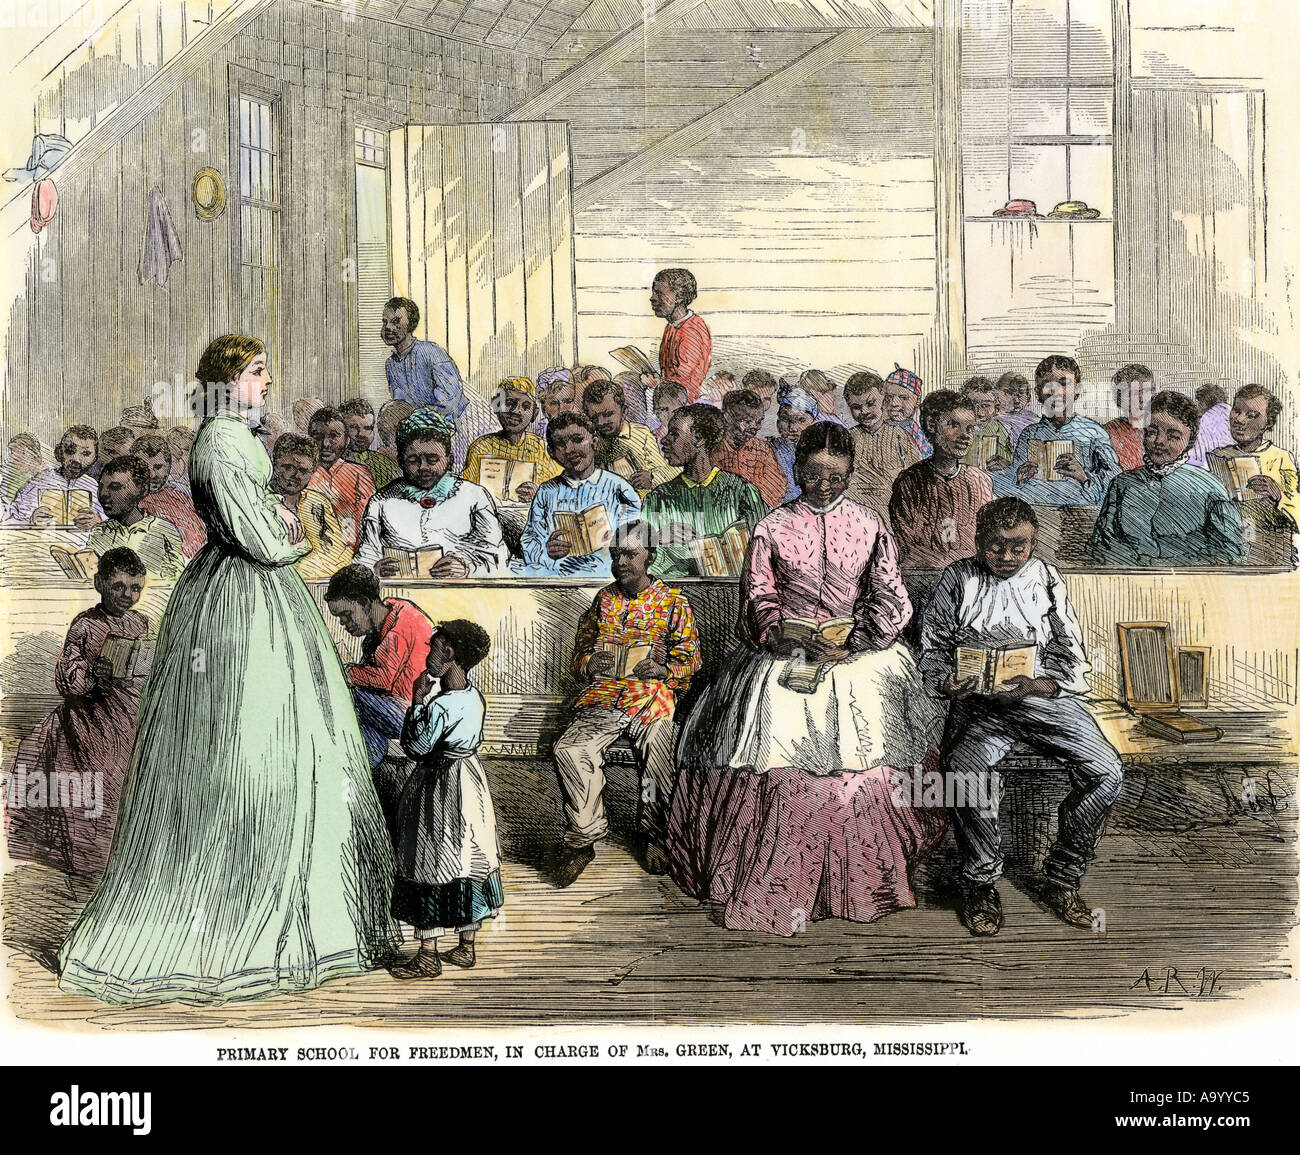 L'école primaire pour personnes libérées en charge de Mme Green à Vicksburg Mississippi 1866. À la main, gravure sur bois Banque D'Images